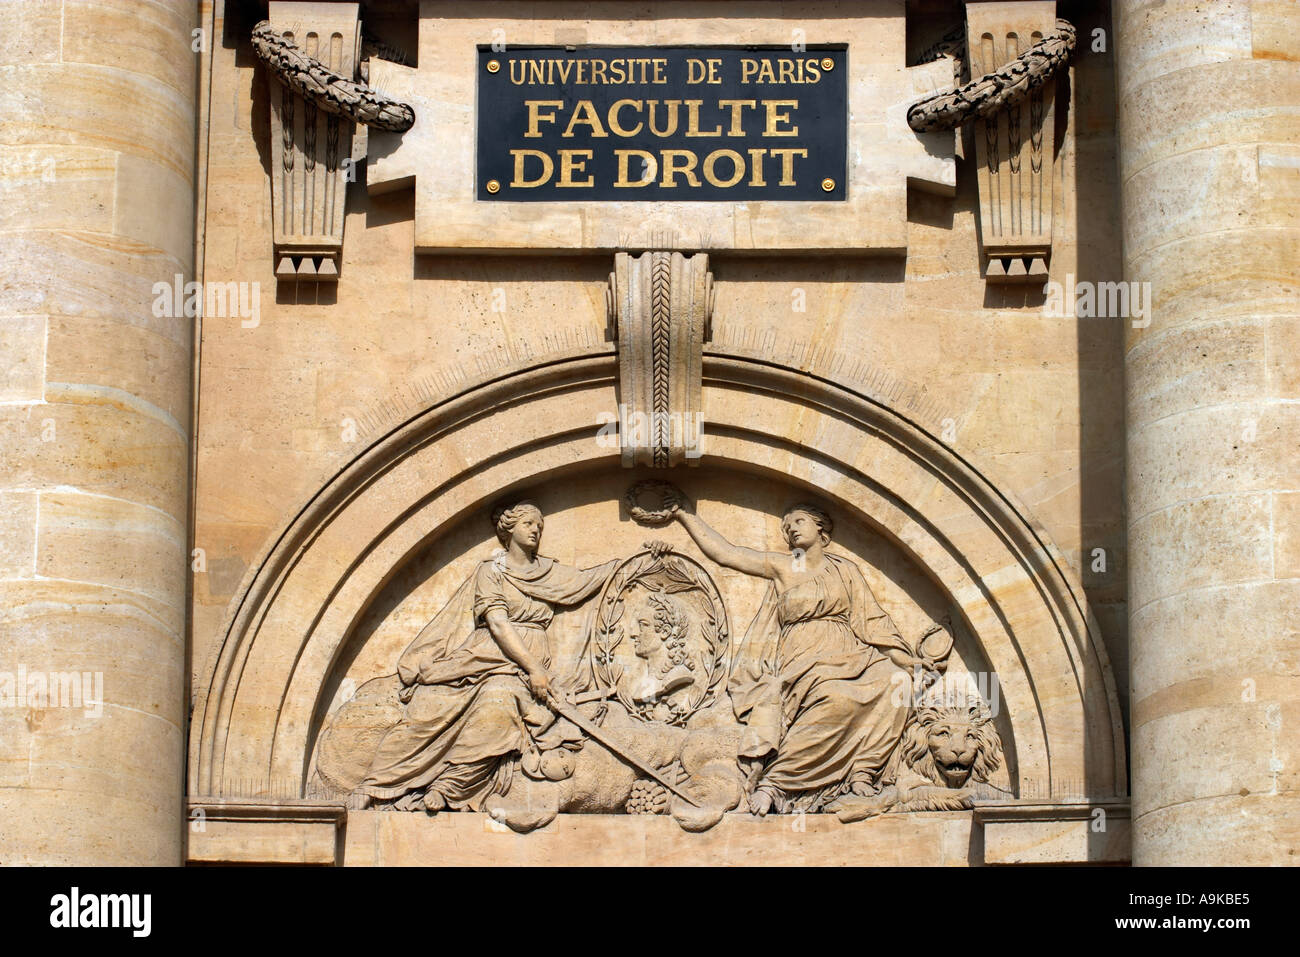 Facade of the Faculte de Droit Paris France Stock Photo